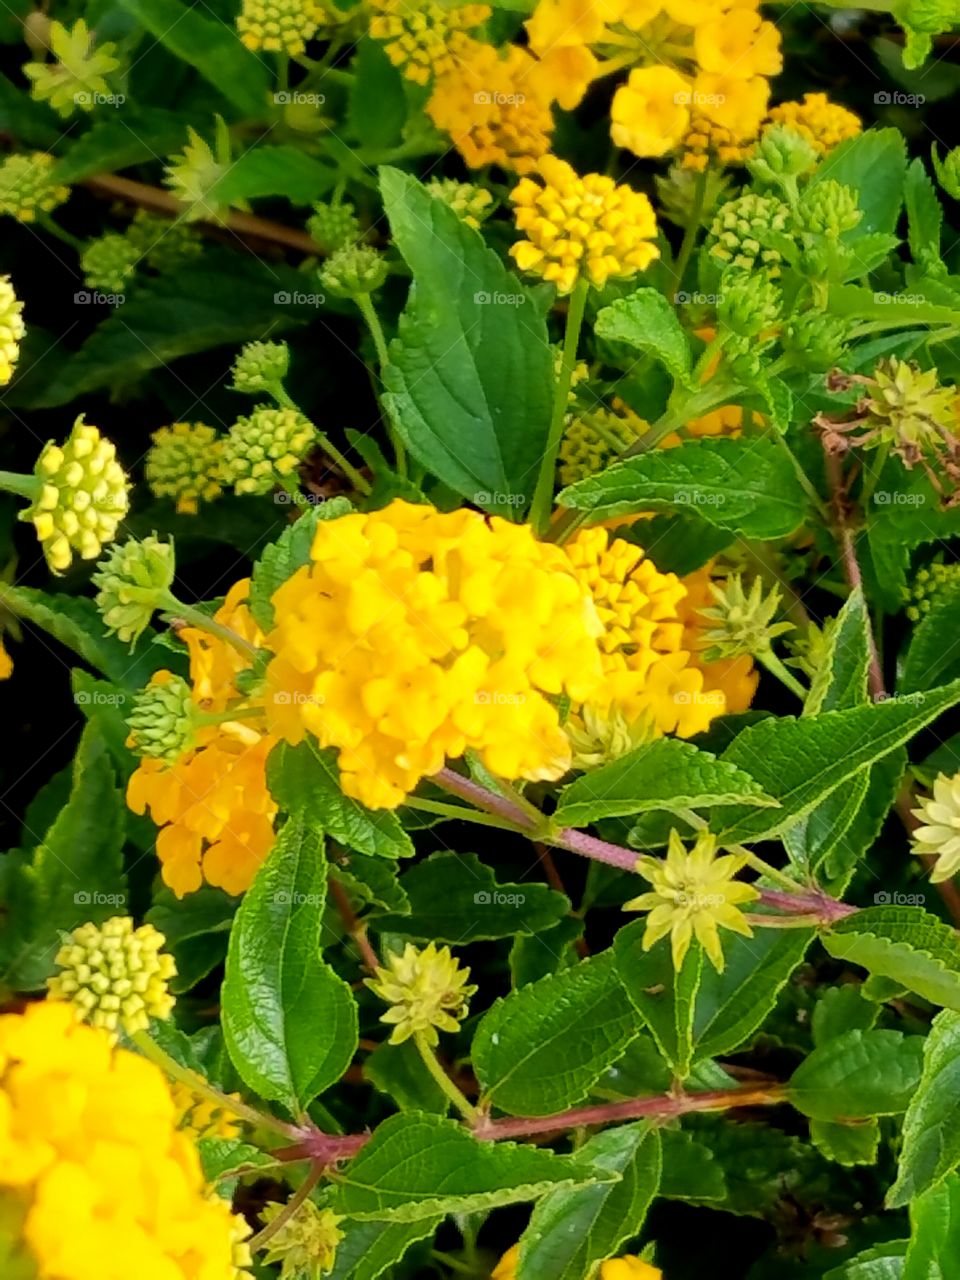 very yellow flower